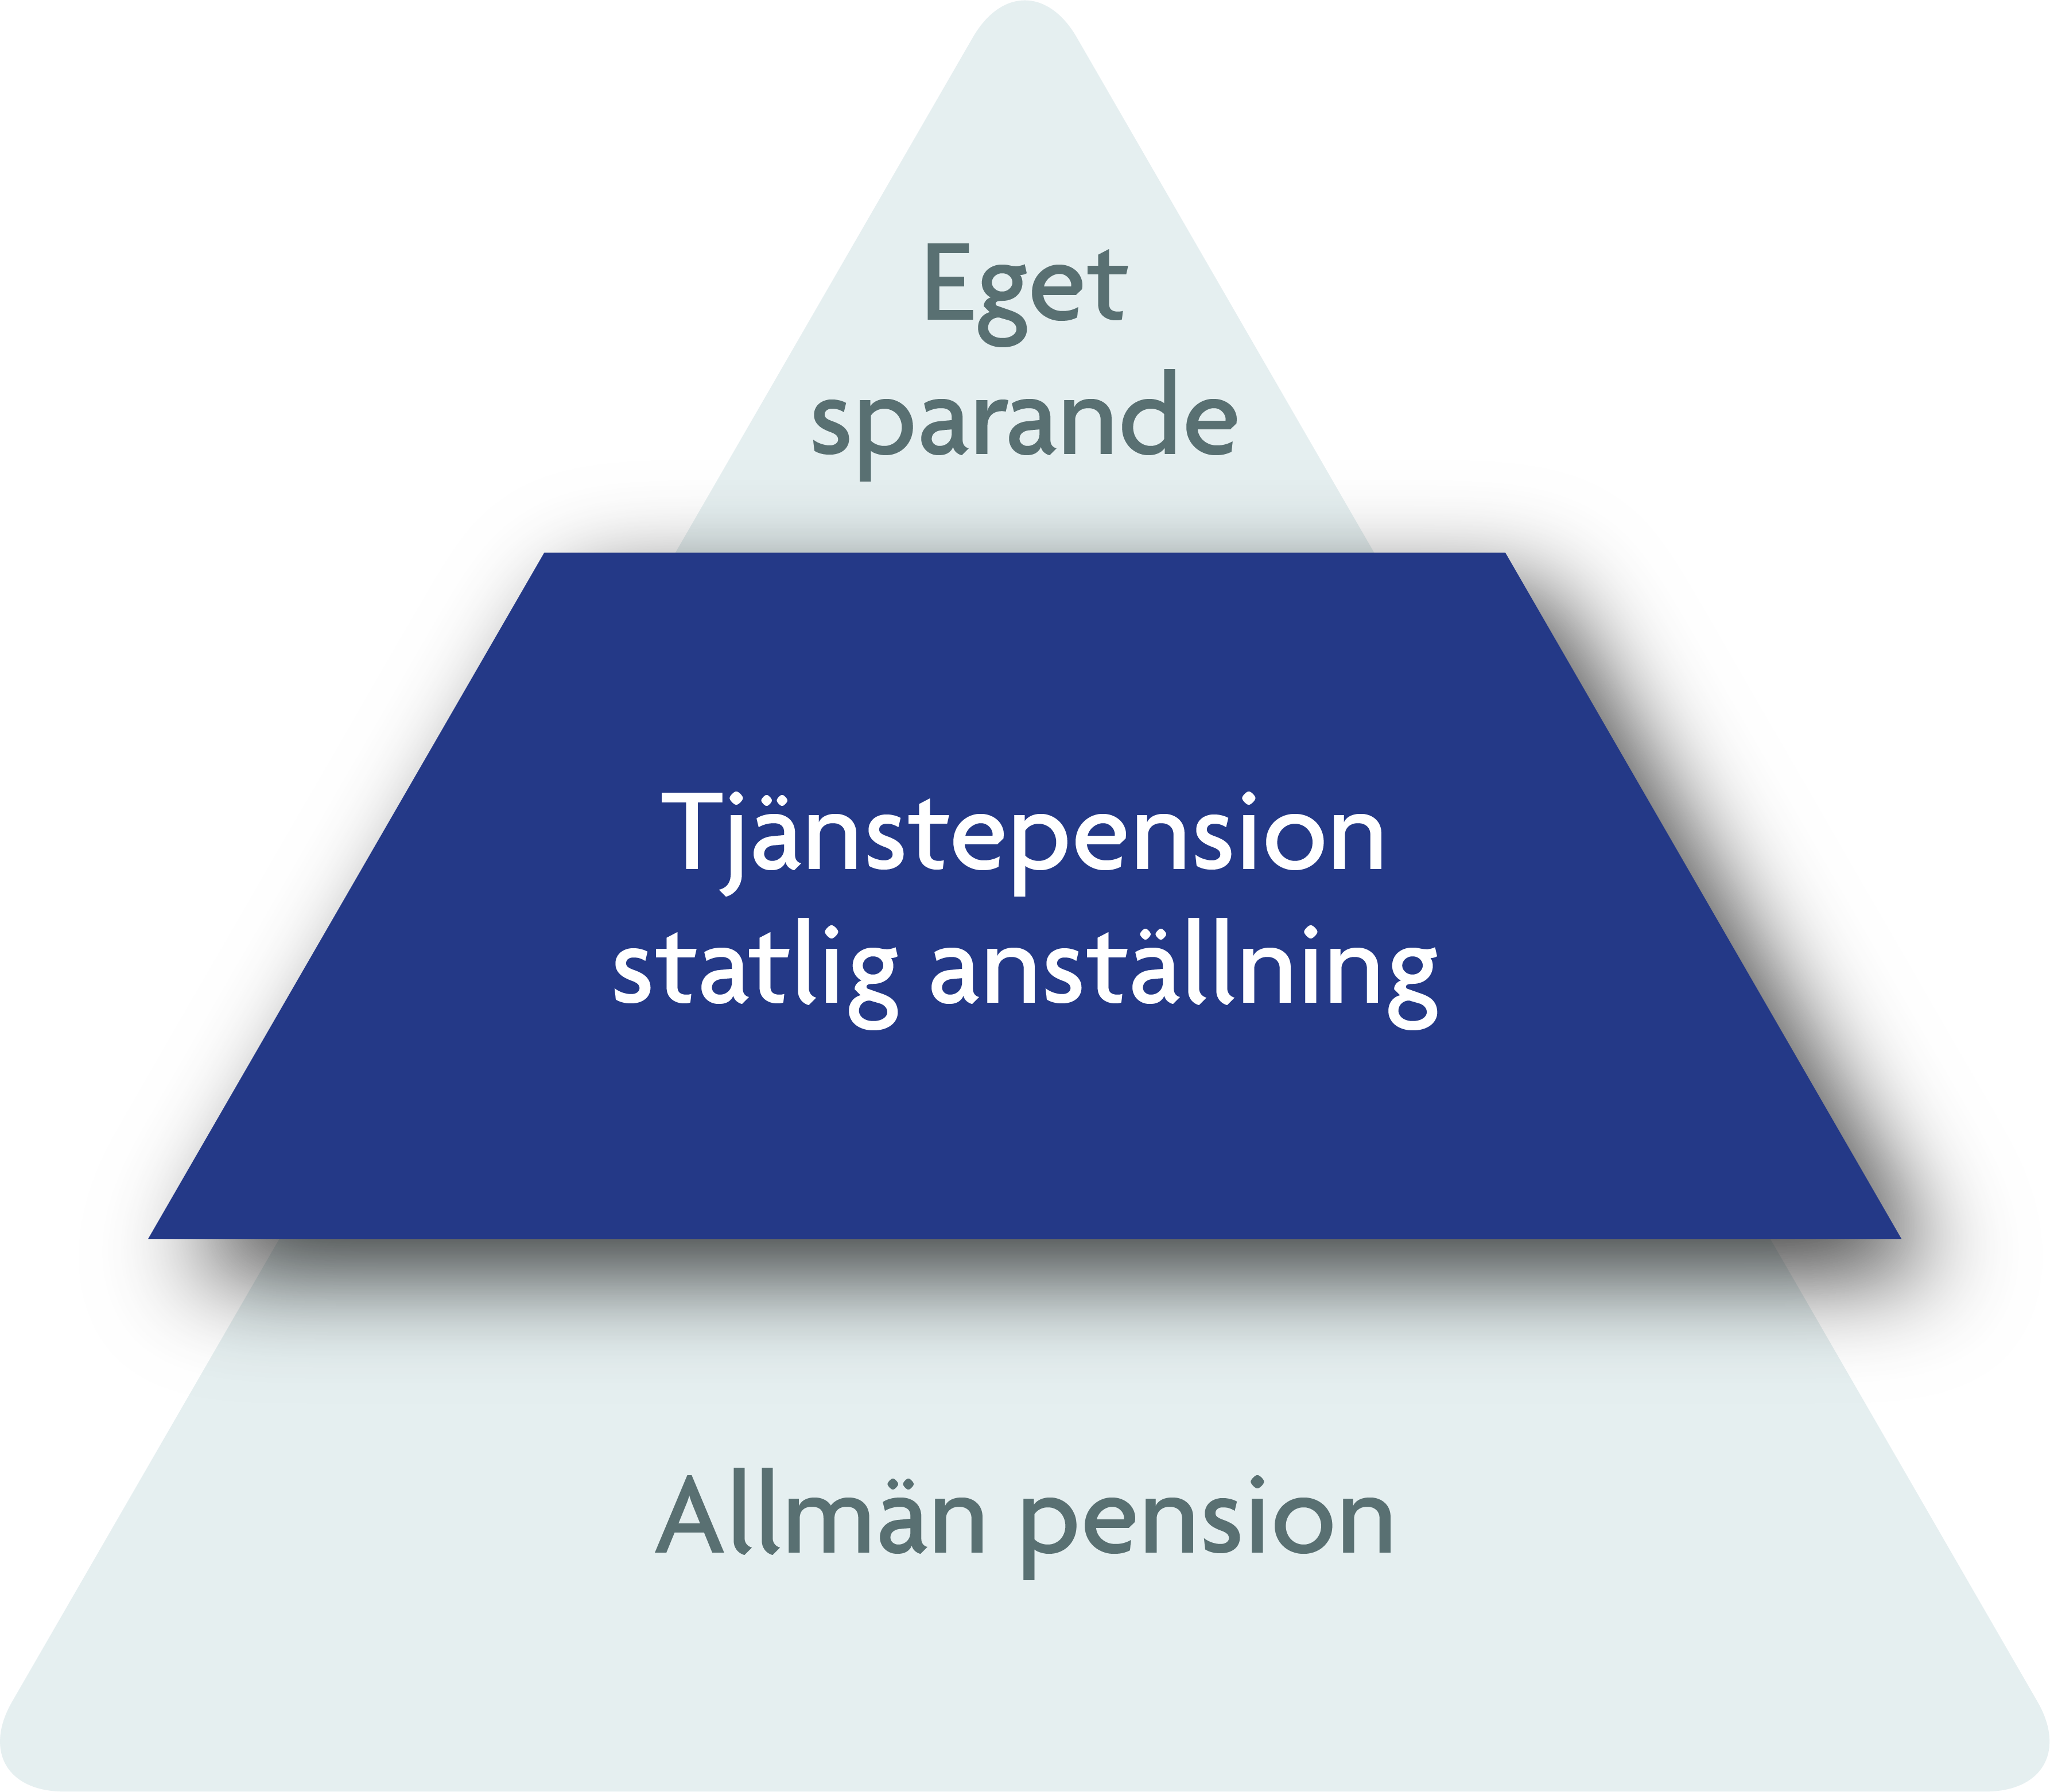 Pensionspyramiden med allmän pension längst ner, tjänstepension i mitten och eget sparande längst upp.